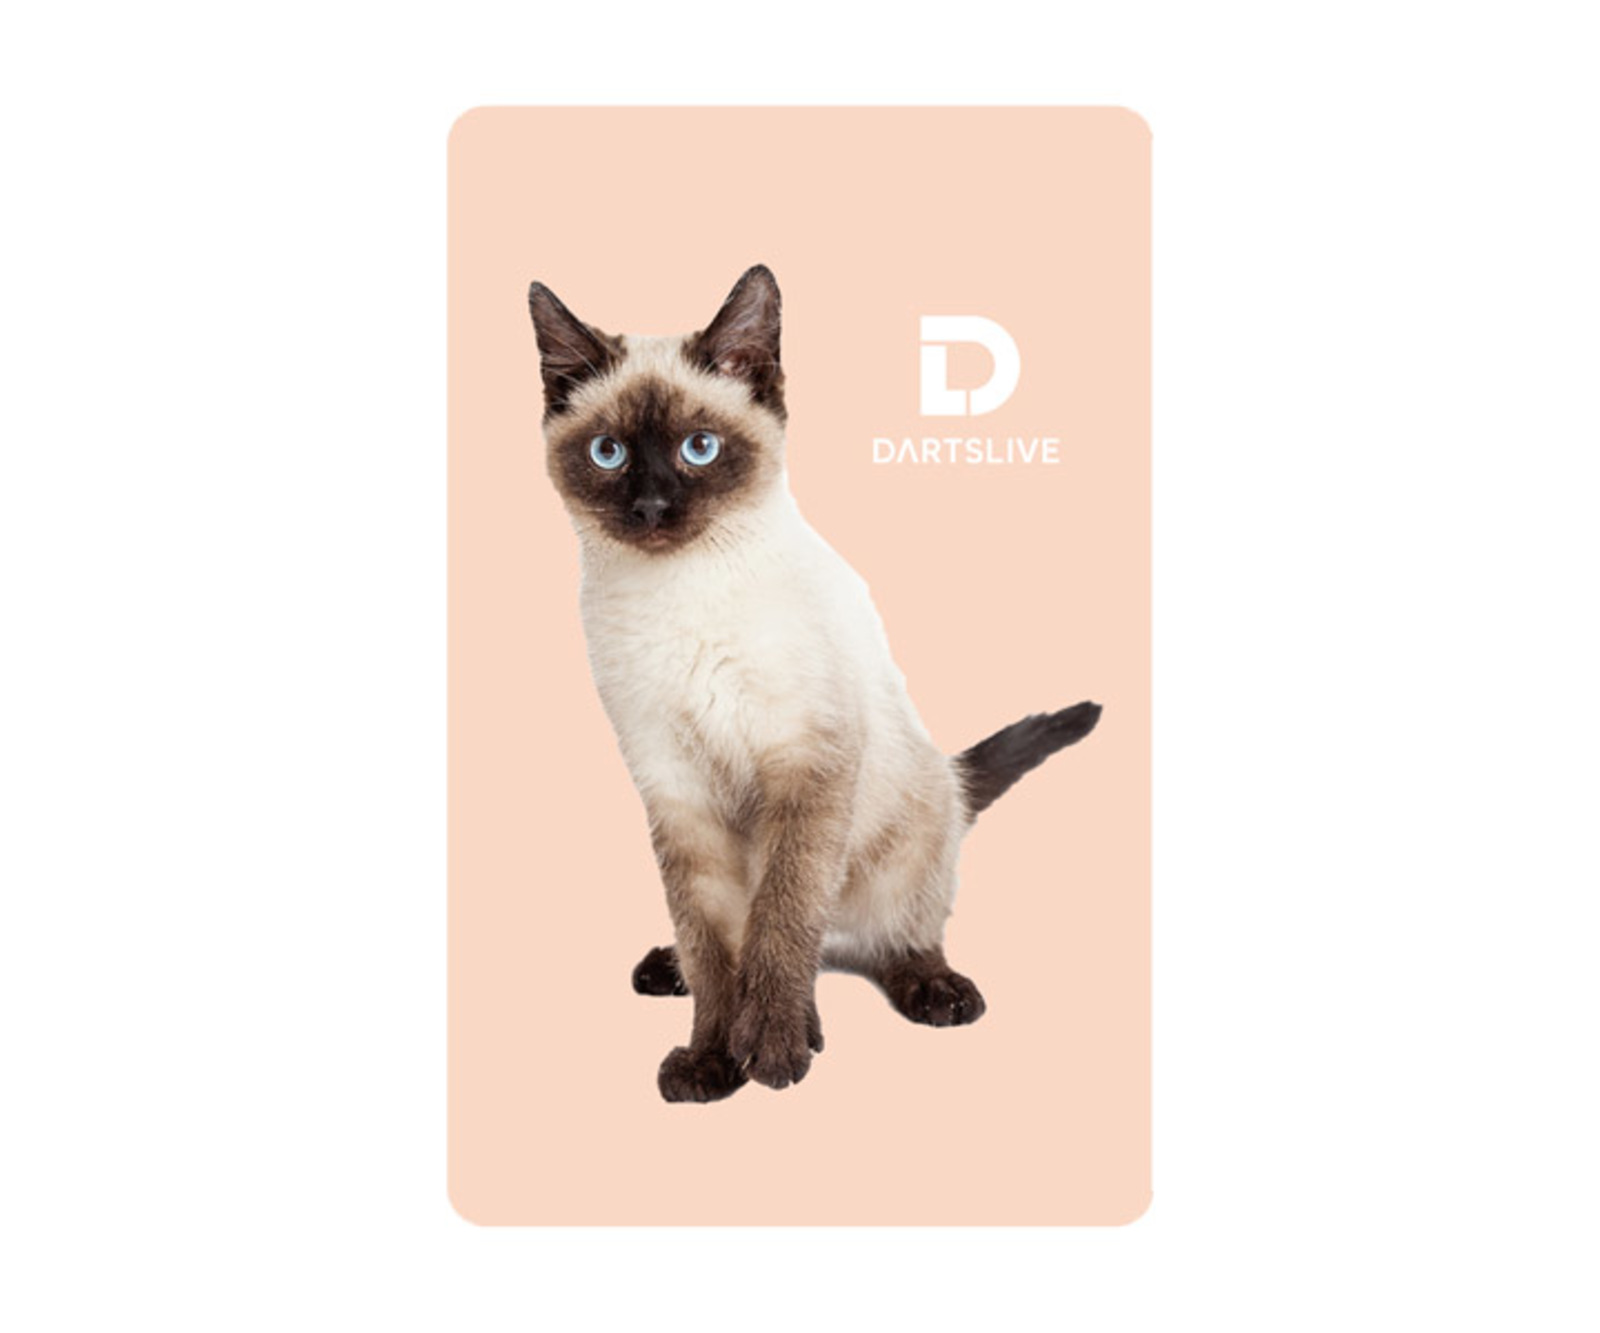 ゲームカード ダーツライブ 047 シャム猫 ダーツ用品はエスダーツ 延べ70万人以上が利用しているダーツショップ